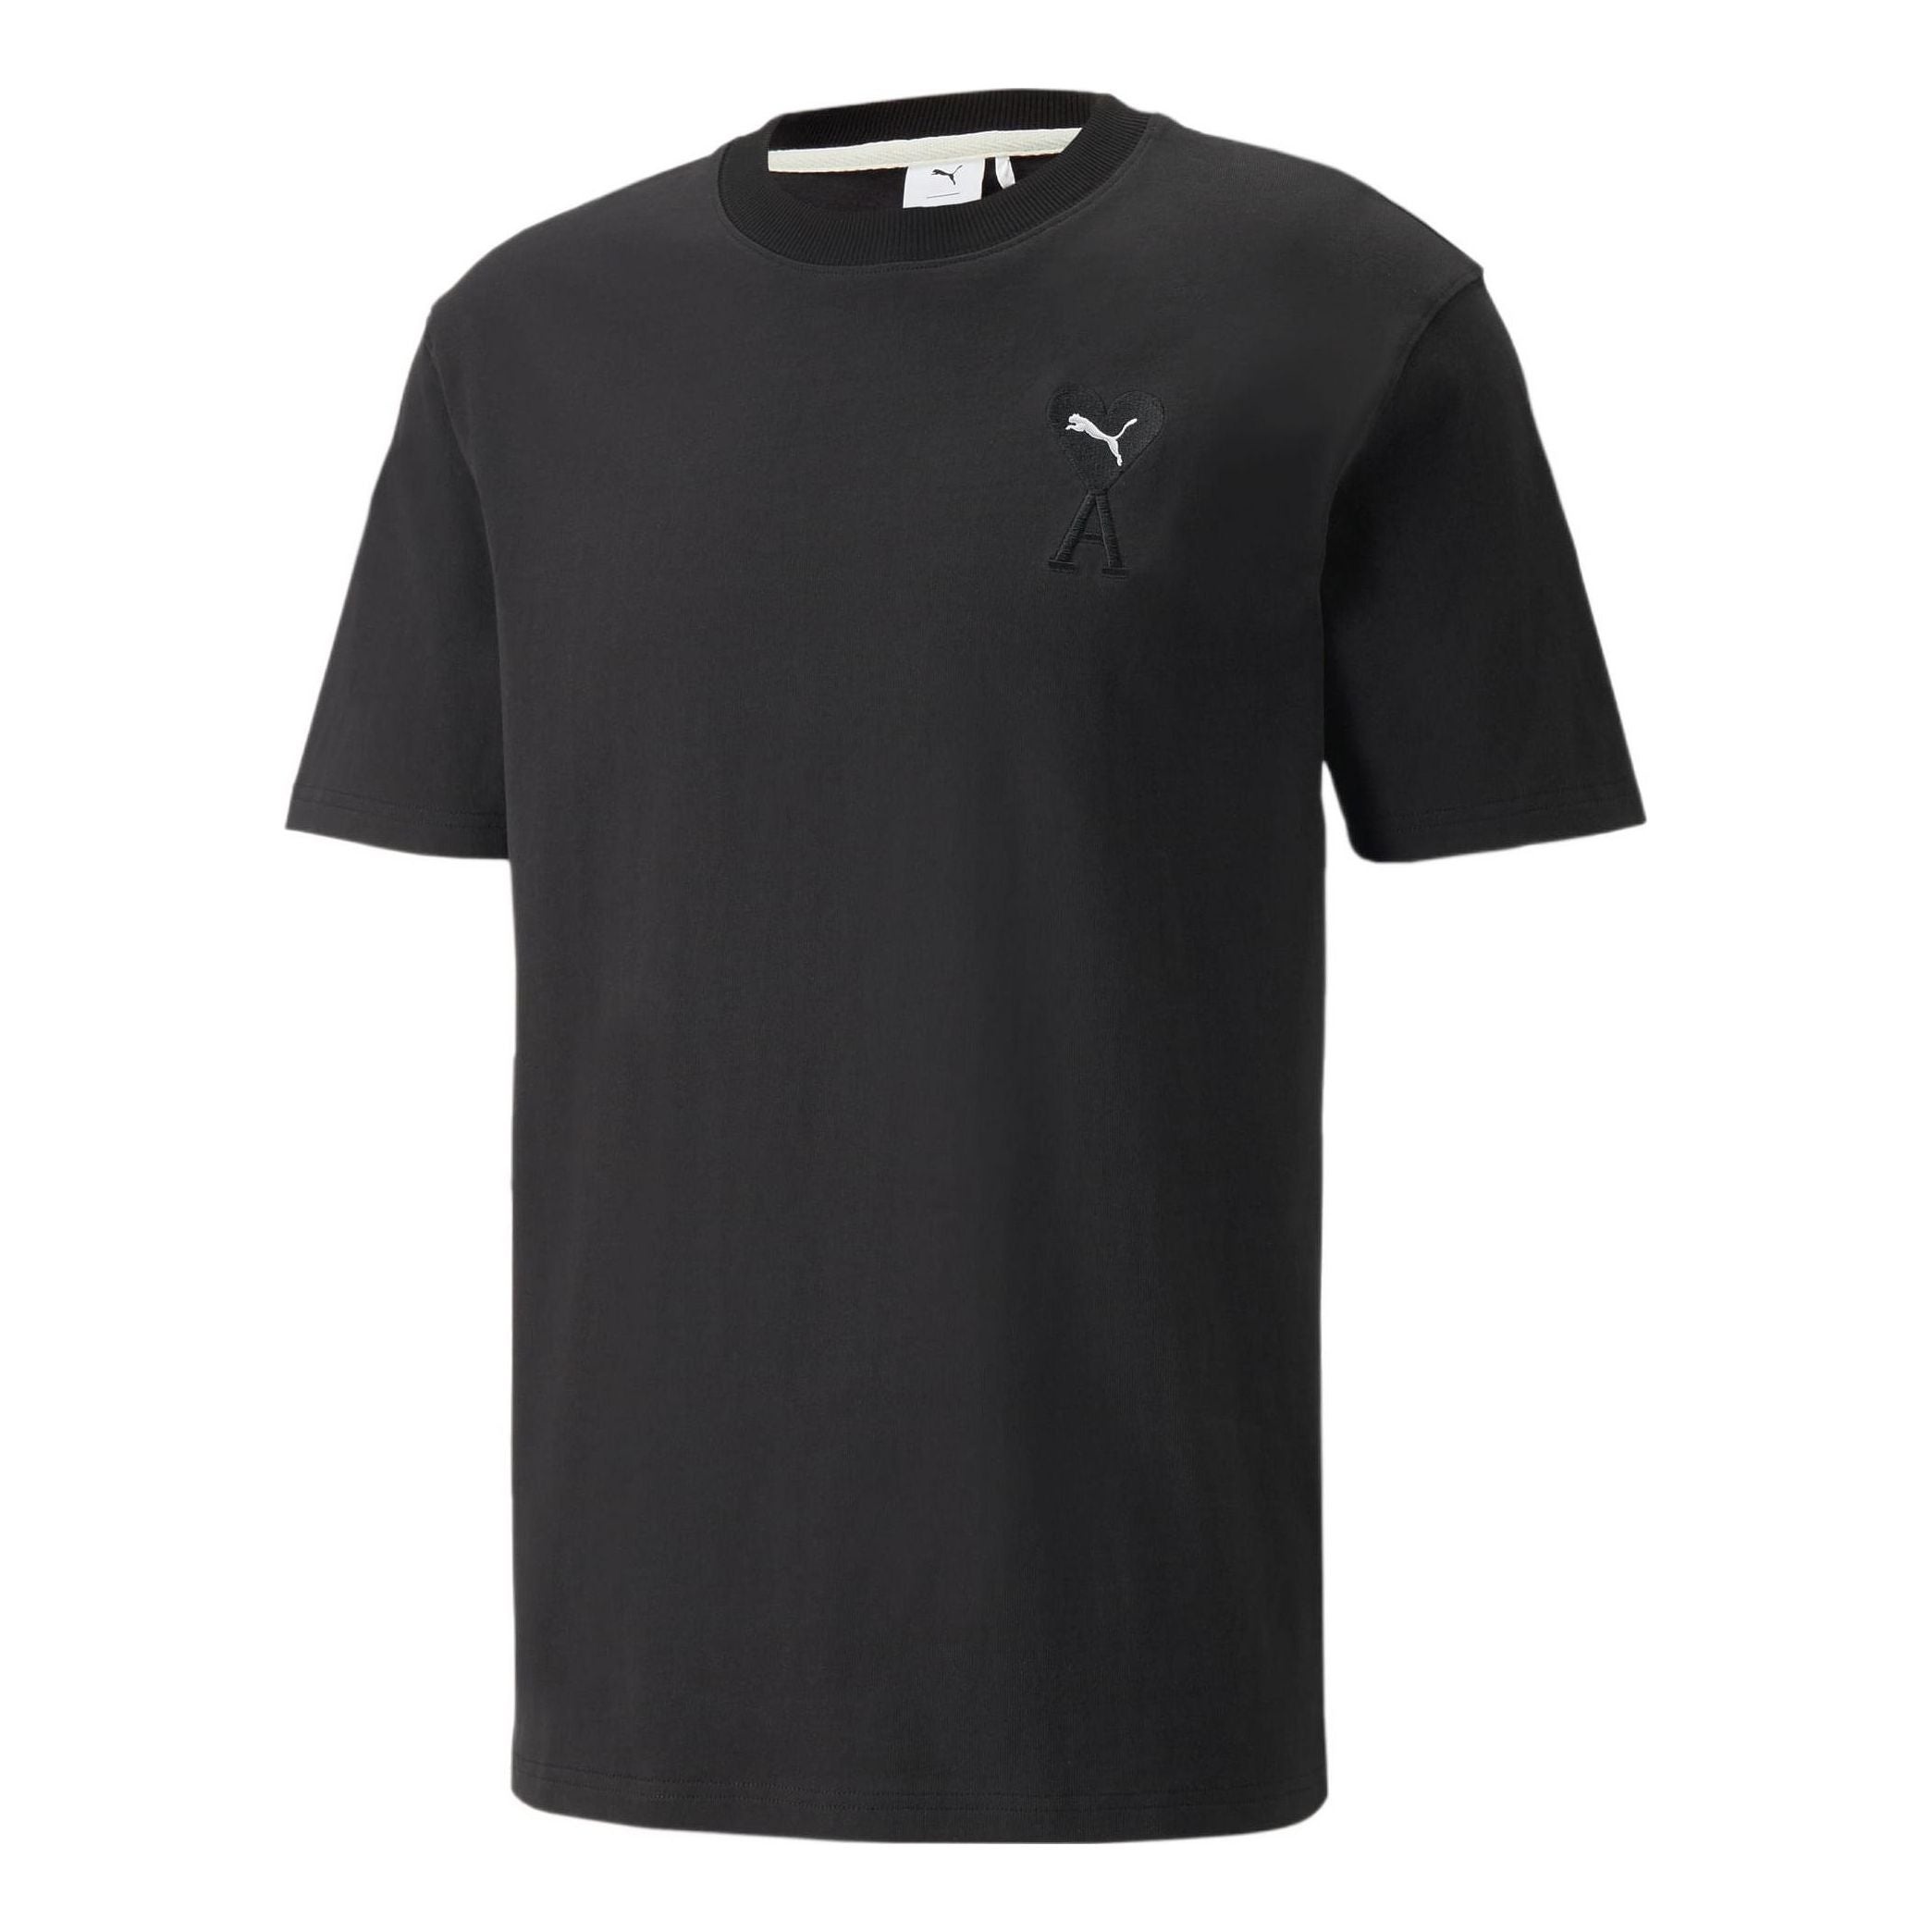 PUMA X AMI Graphic T-Shirt 'Black' 534070-01 - 1